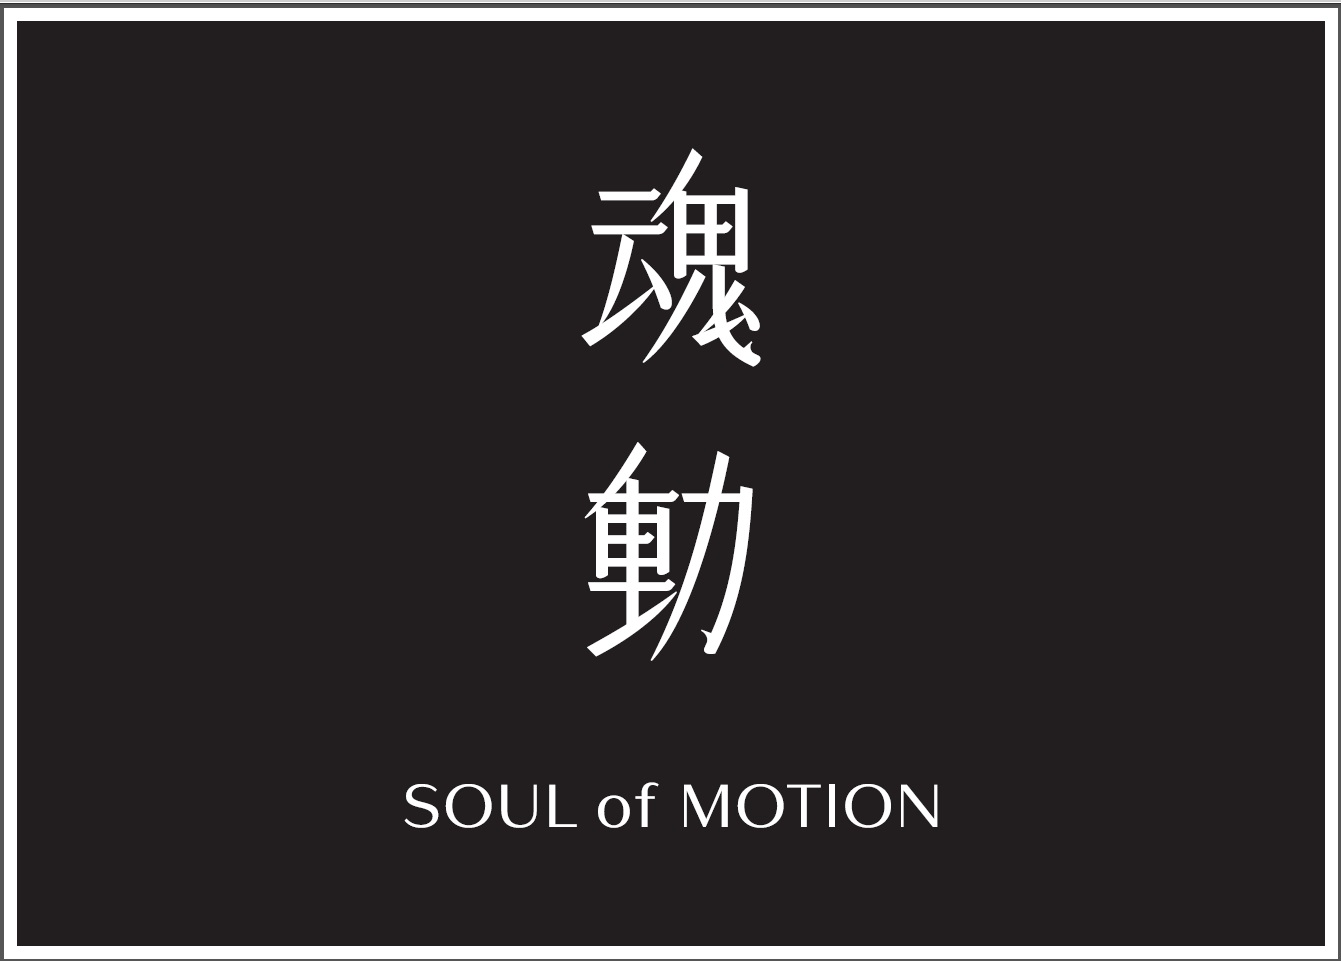 魂動」を表現したフレグランス「SOUL of MOTION」を発売します 